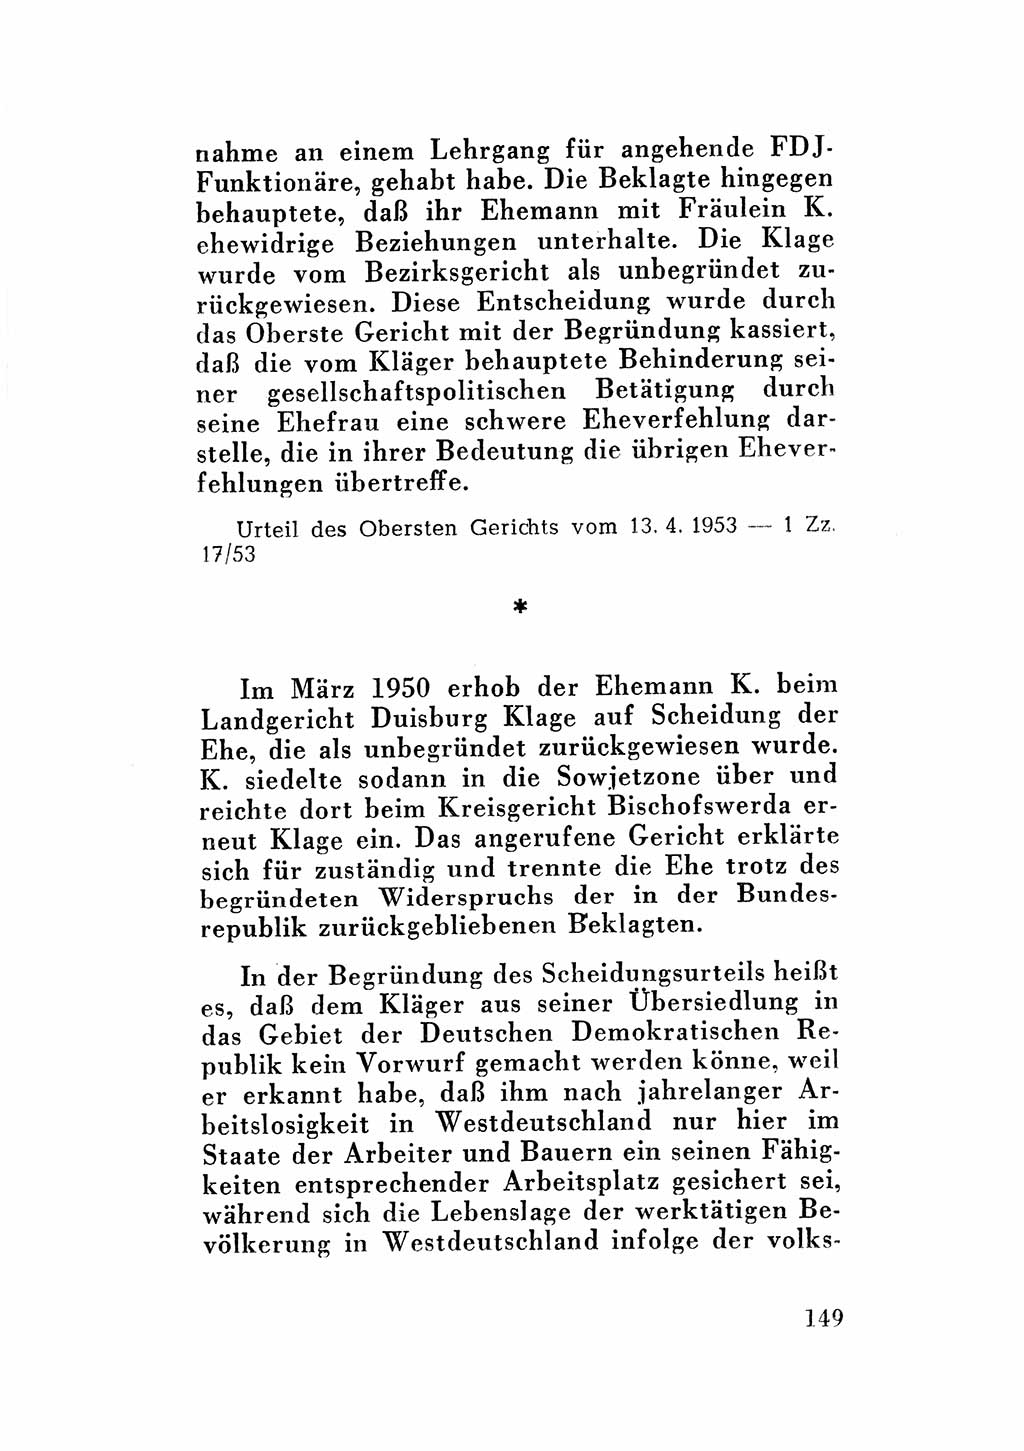 Katalog des Unrechts, Untersuchungsausschuß Freiheitlicher Juristen (UfJ) [Bundesrepublik Deutschland (BRD)] 1956, Seite 149 (Kat. UnR. UfJ BRD 1956, S. 149)